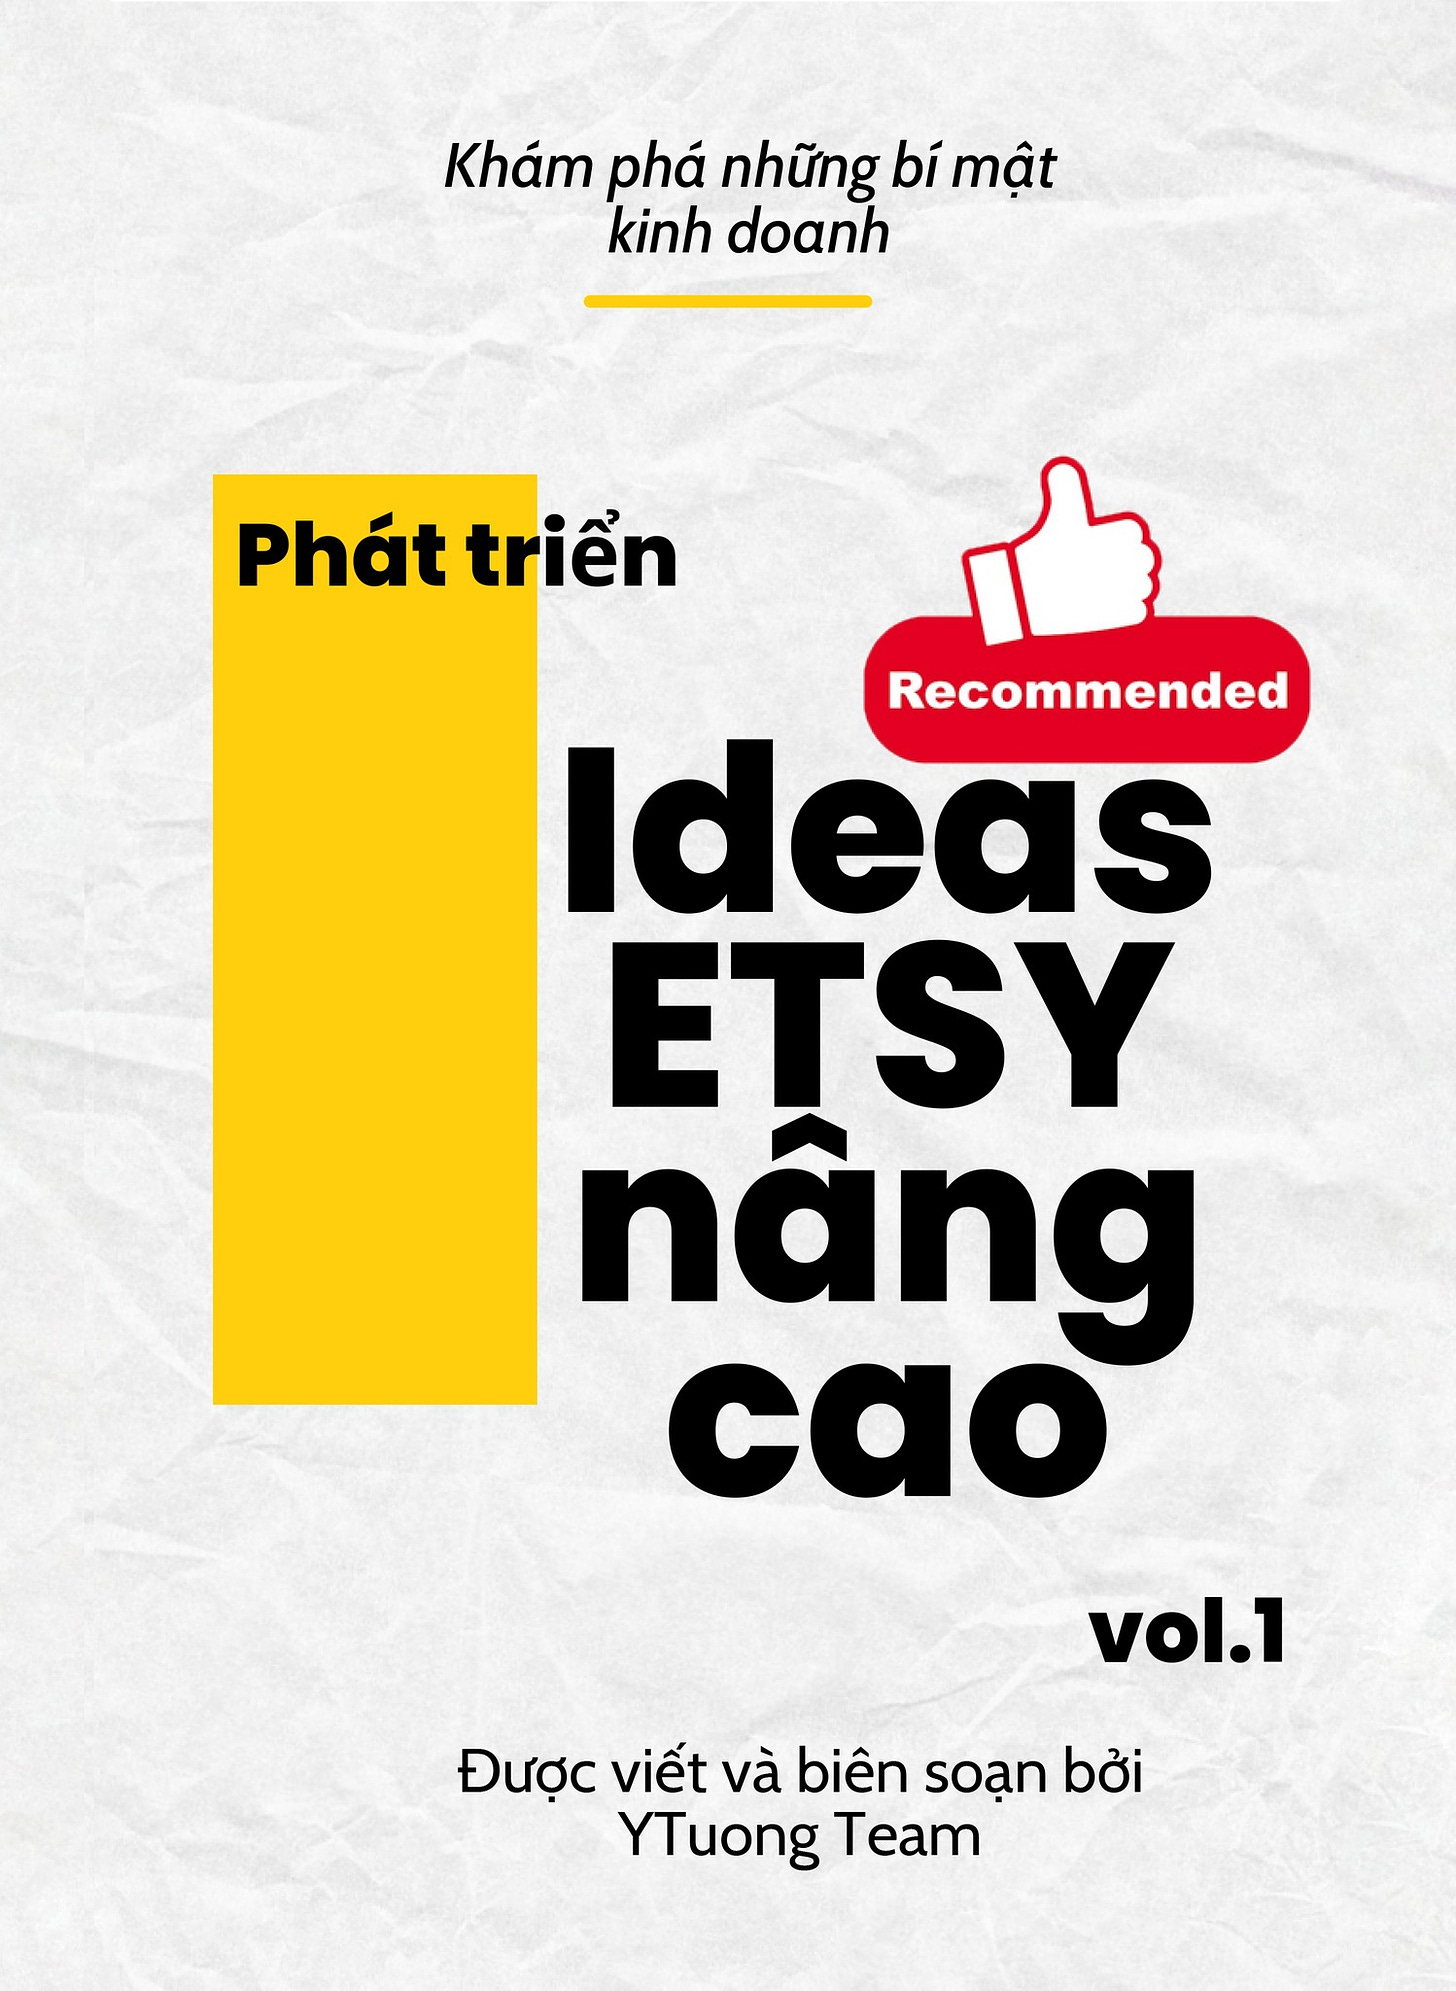 May be a graphic of text that says 'Khám phá những bí mật kinh doanh Phát triển Recomended Ideas ETSY nâng cao vol.1 Được viết và biên soạn bởi YTuong Team'